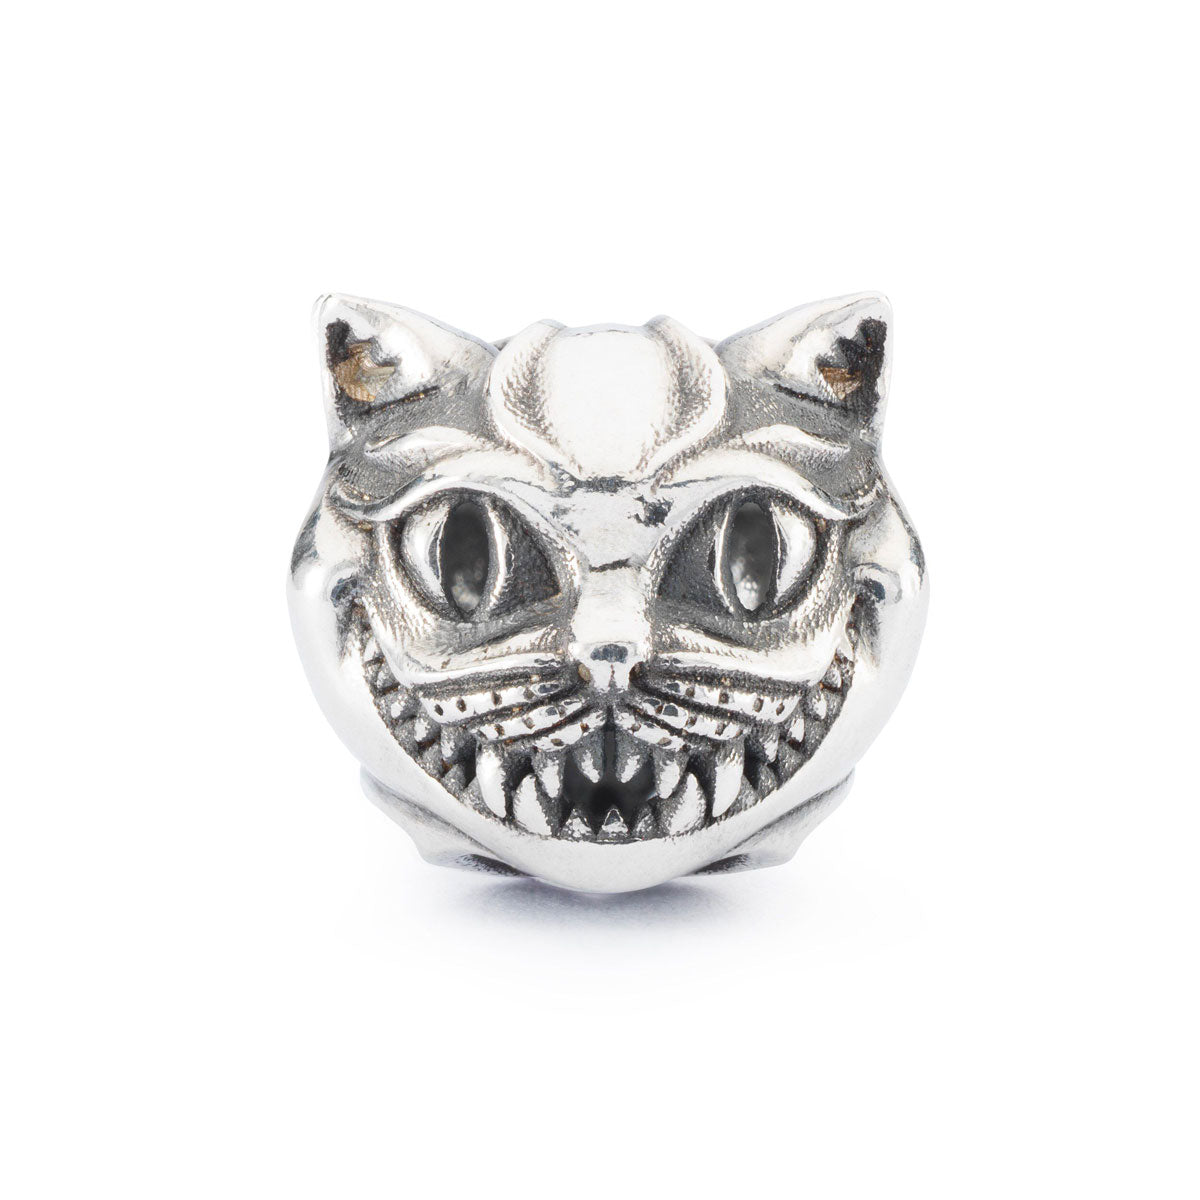 Gatto Astratto creato da Trollbeads per l'Halloween del 2022. Il beads in argento 925 raffigura un gatto sorridente. 